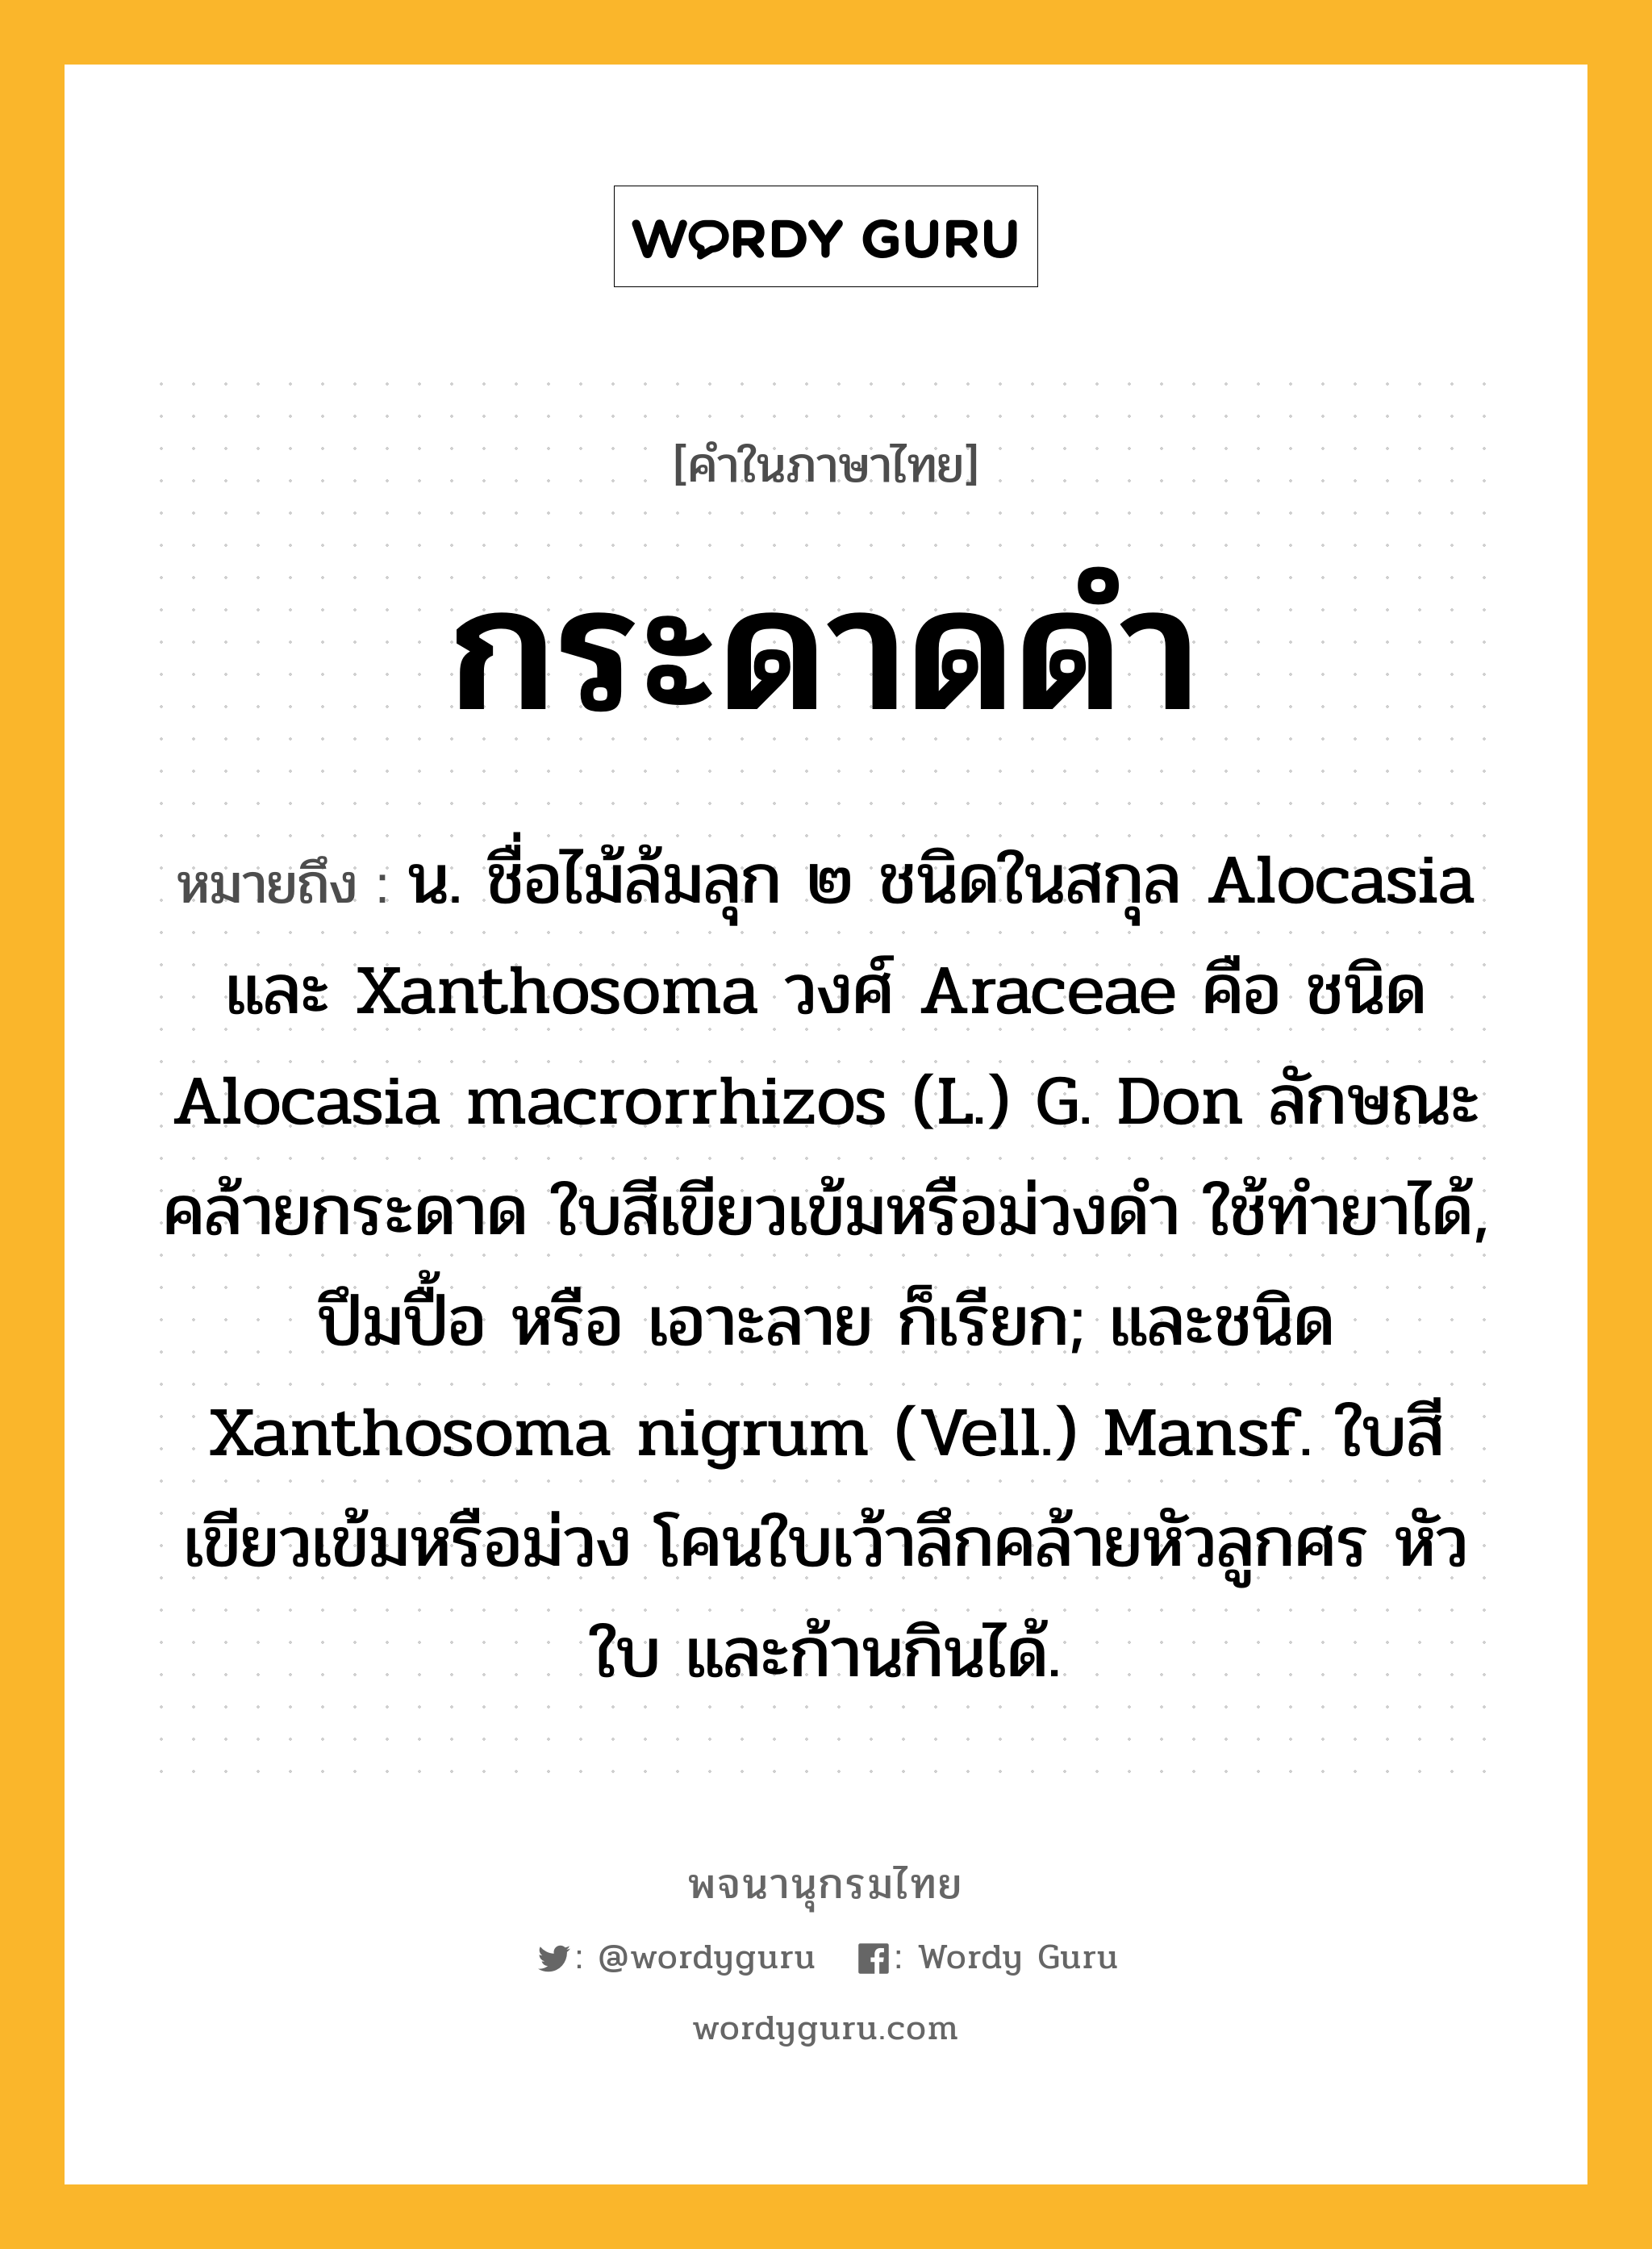 กระดาดดำ หมายถึงอะไร?, คำในภาษาไทย กระดาดดำ หมายถึง น. ชื่อไม้ล้มลุก ๒ ชนิดในสกุล Alocasia และ Xanthosoma วงศ์ Araceae คือ ชนิด Alocasia macrorrhizos (L.) G. Don ลักษณะคล้ายกระดาด ใบสีเขียวเข้มหรือม่วงดำ ใช้ทํายาได้, ปึมปื้อ หรือ เอาะลาย ก็เรียก; และชนิด Xanthosoma nigrum (Vell.) Mansf. ใบสีเขียวเข้มหรือม่วง โคนใบเว้าลึกคล้ายหัวลูกศร หัว ใบ และก้านกินได้.